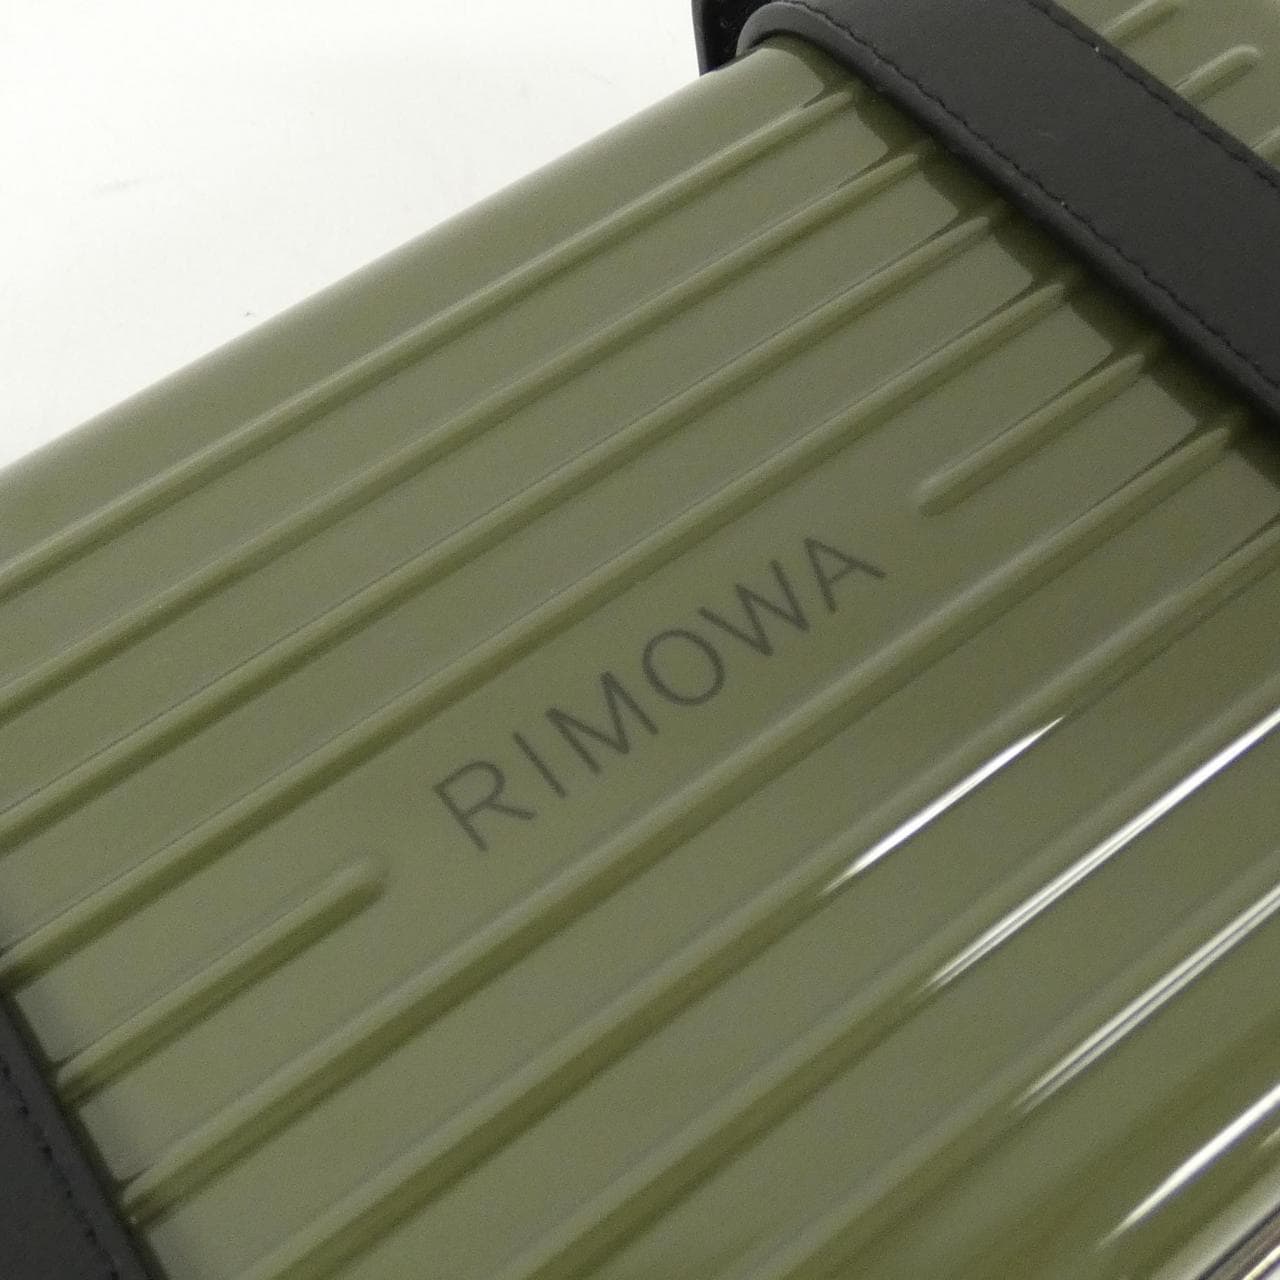 RIMOWA PERSONAL 890 11 shoulder bag